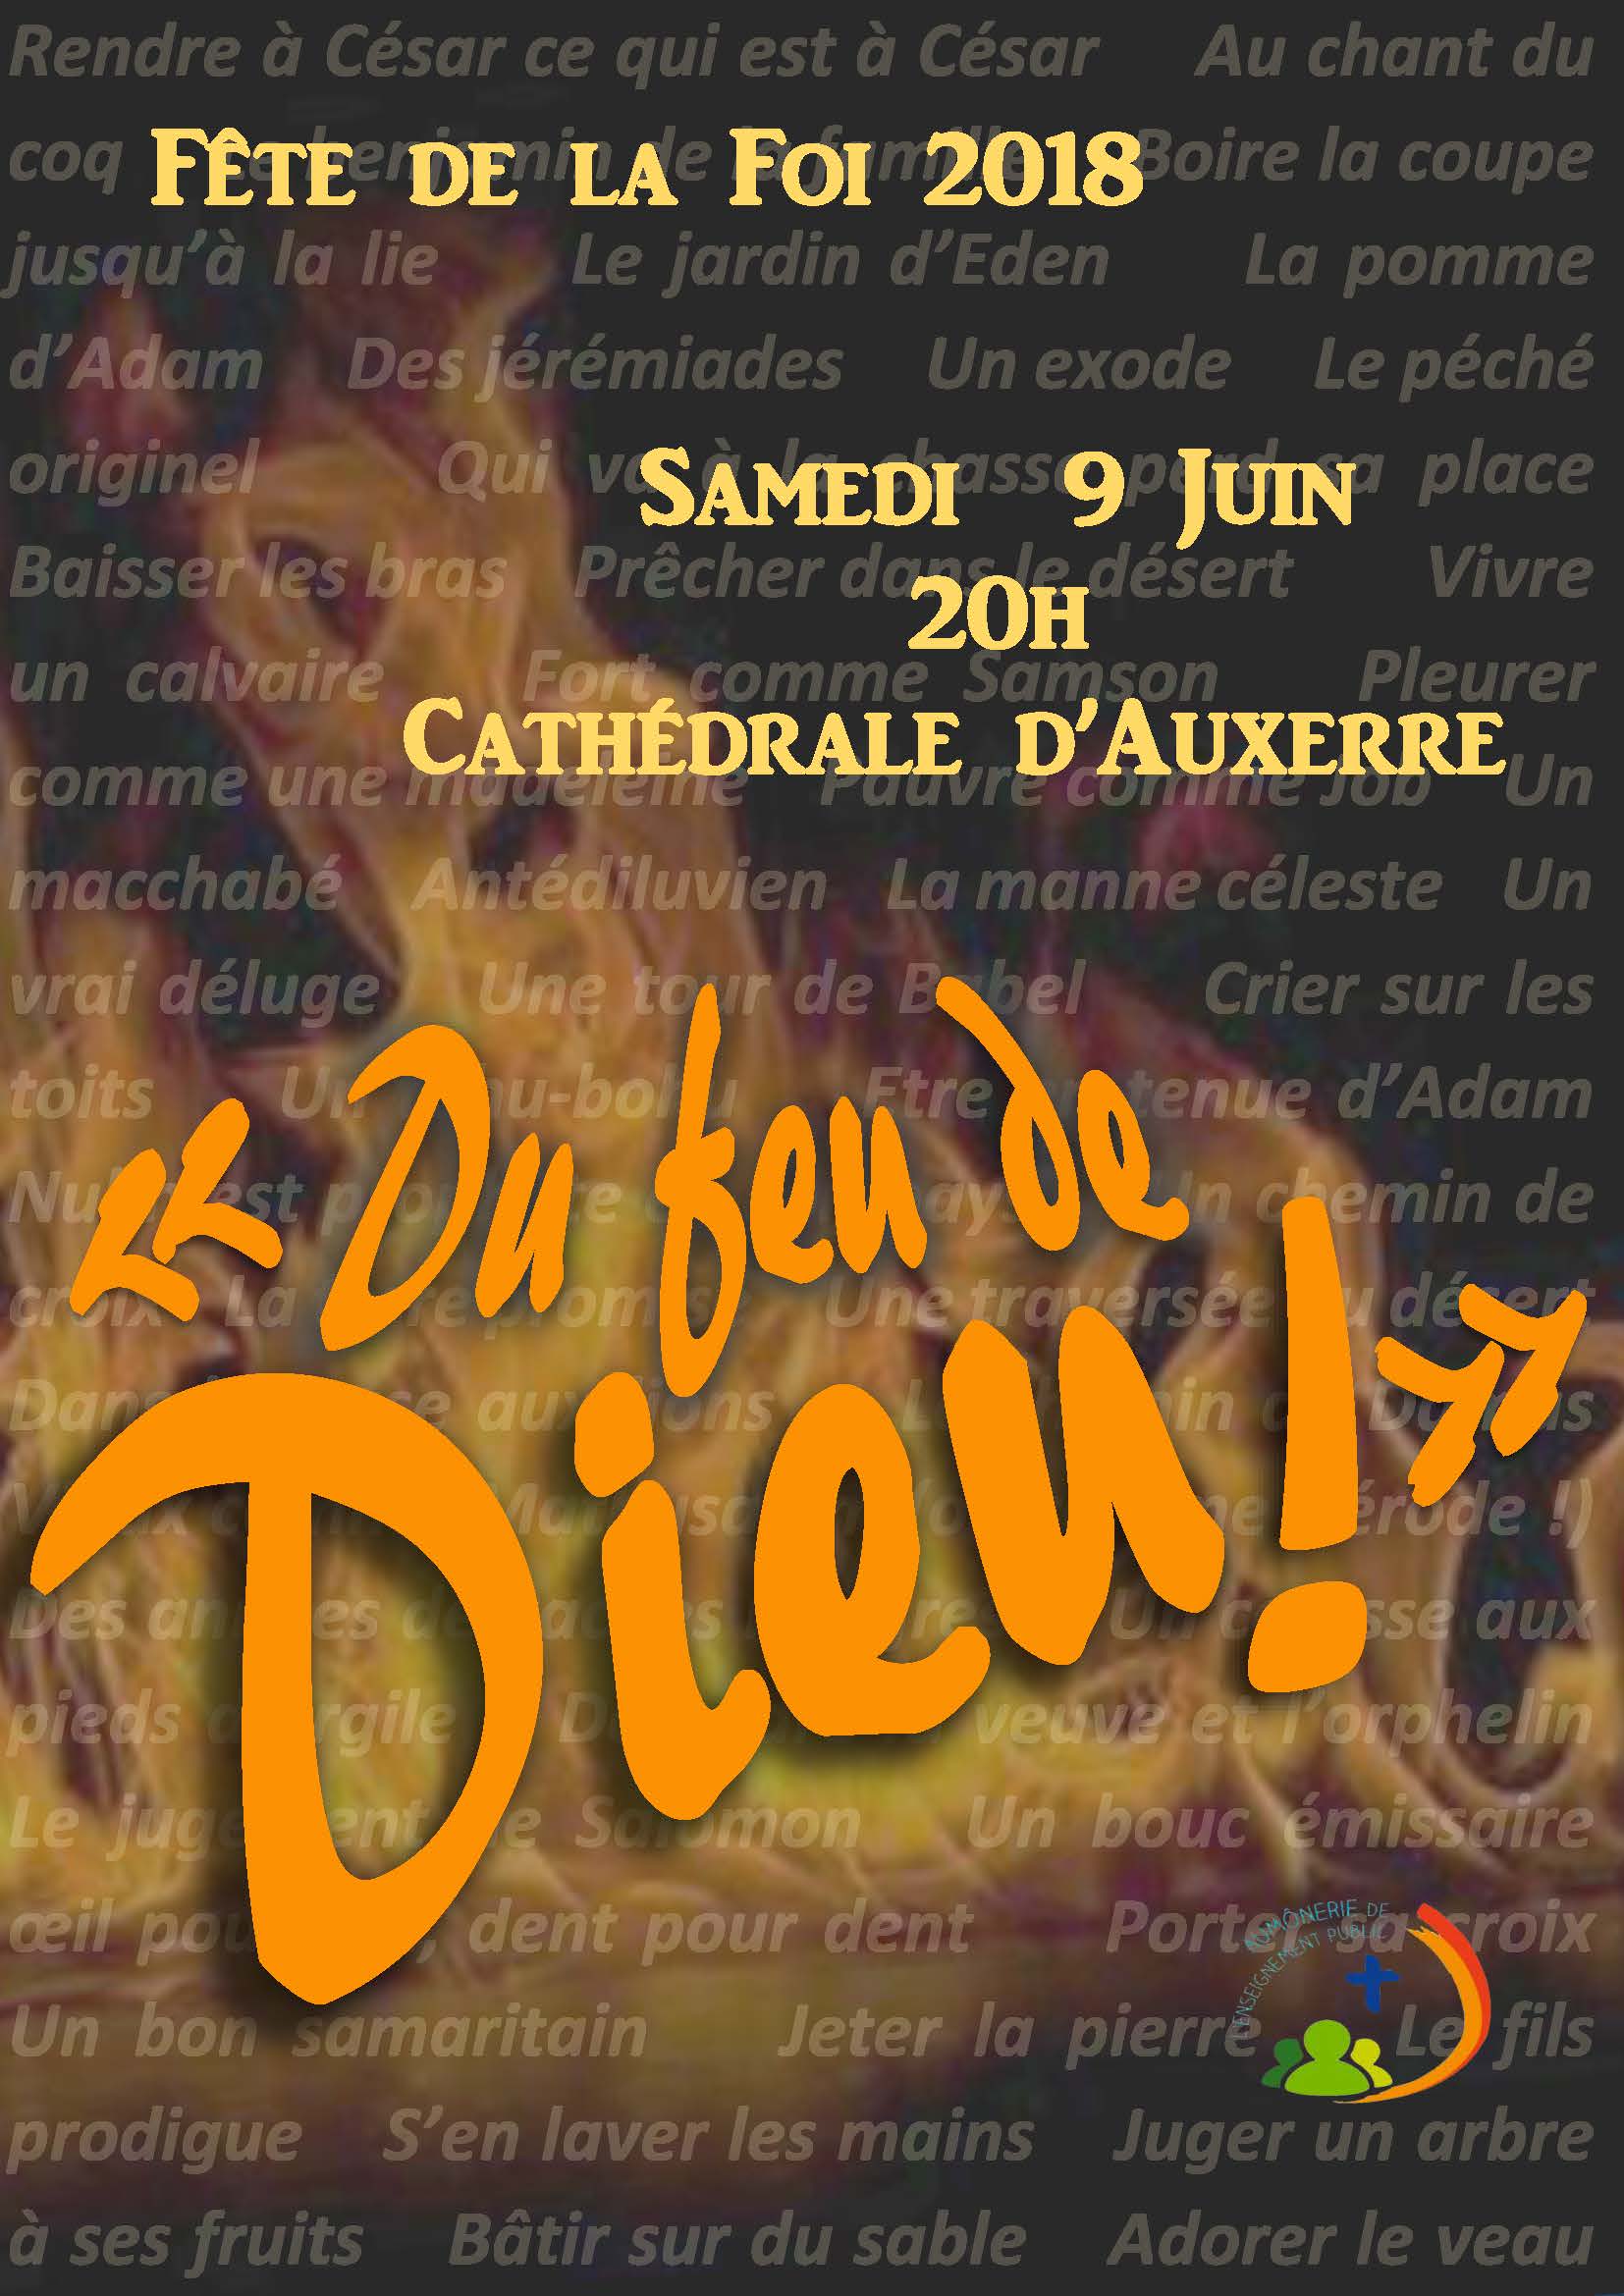 Fête de la Foi le 9 juin 2018 à Auxerre (89)